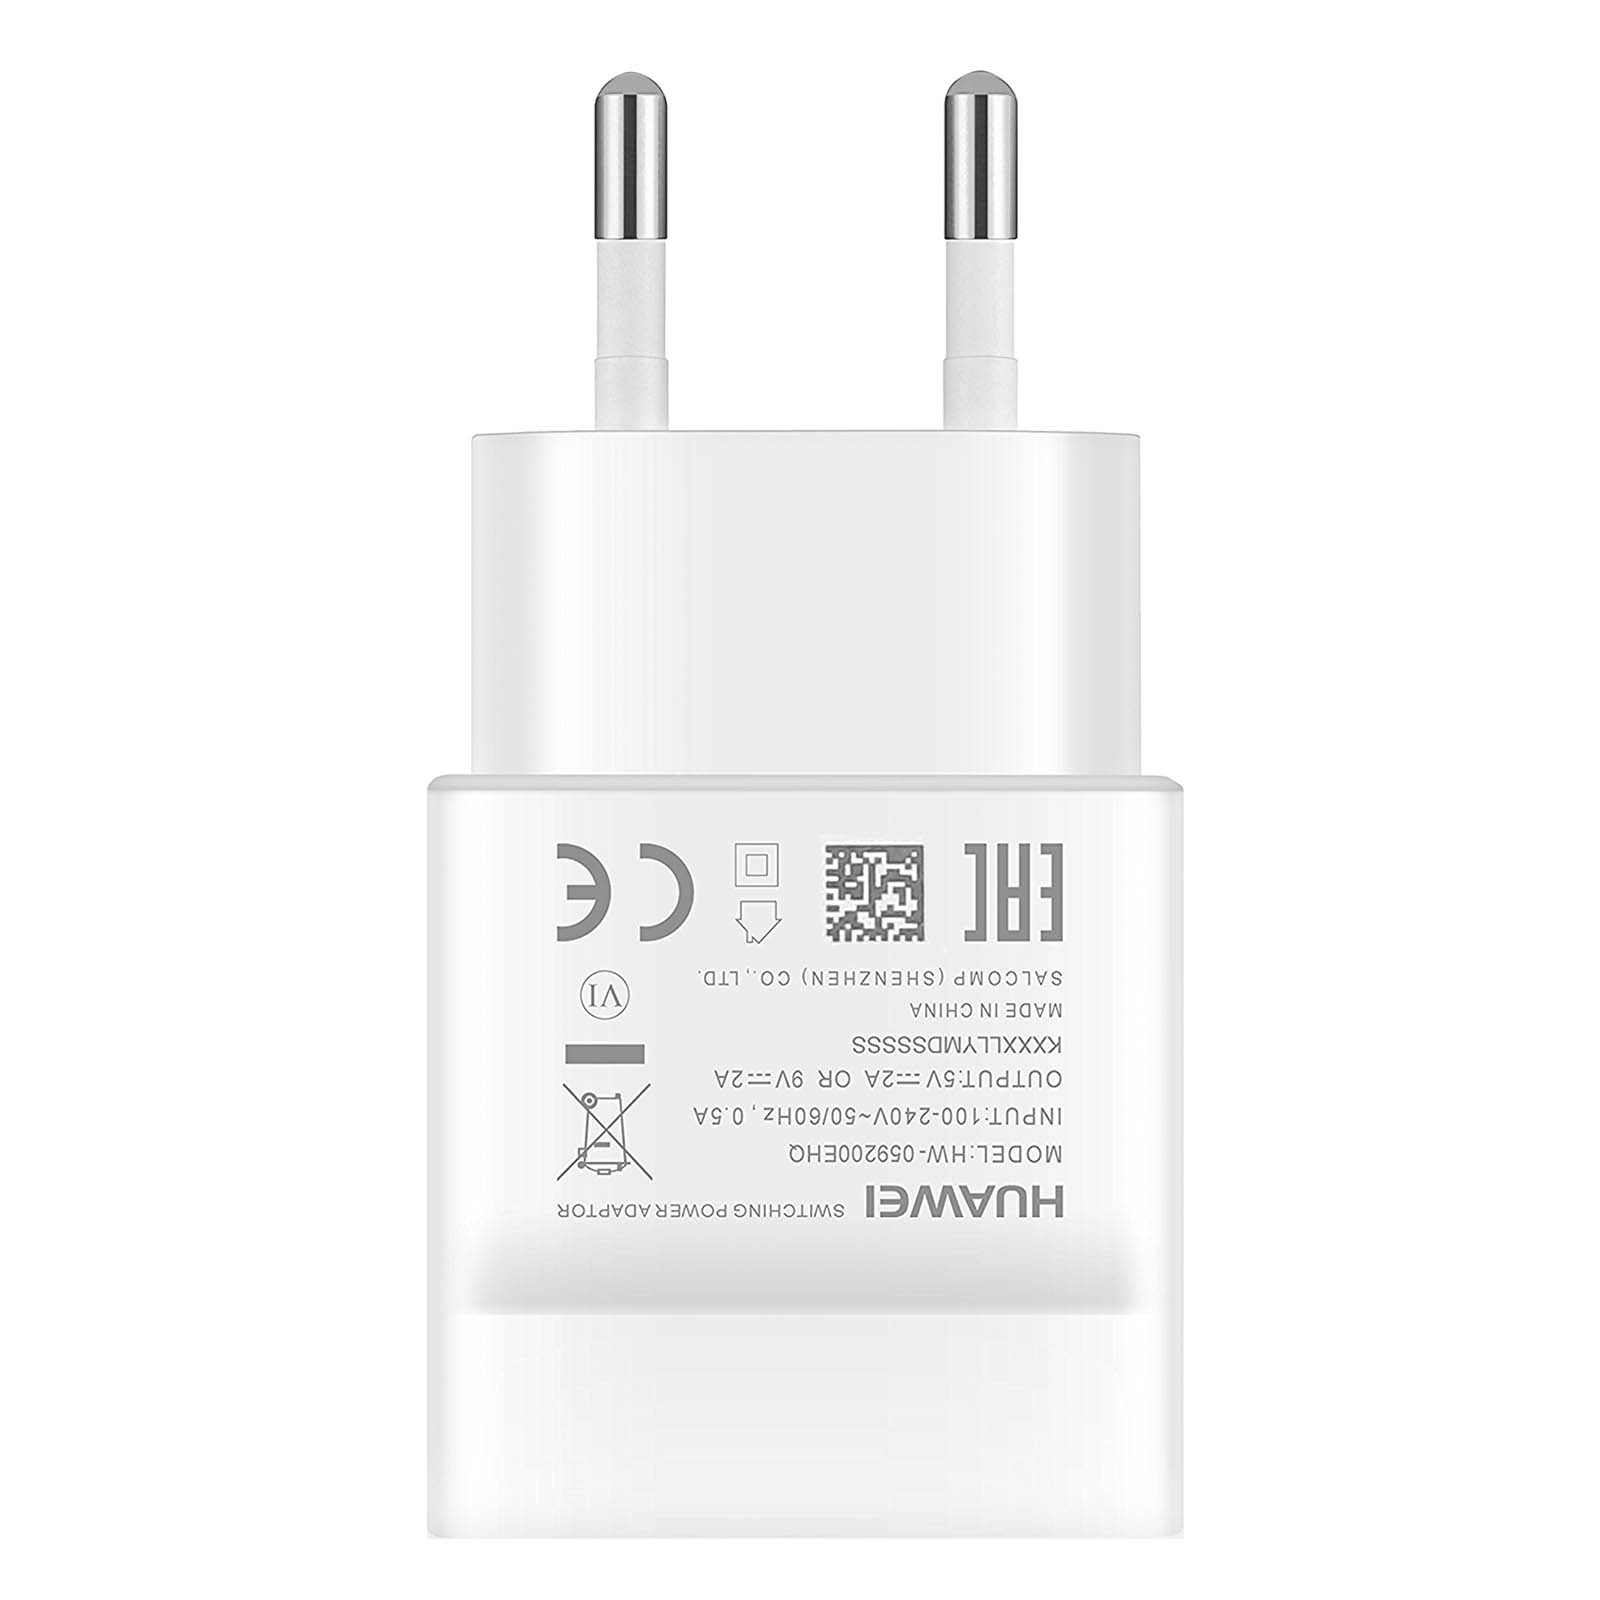 HUAWEI Netzteil, USB-C 2A Weiß Wand-Ladegerät Netzteile Universal